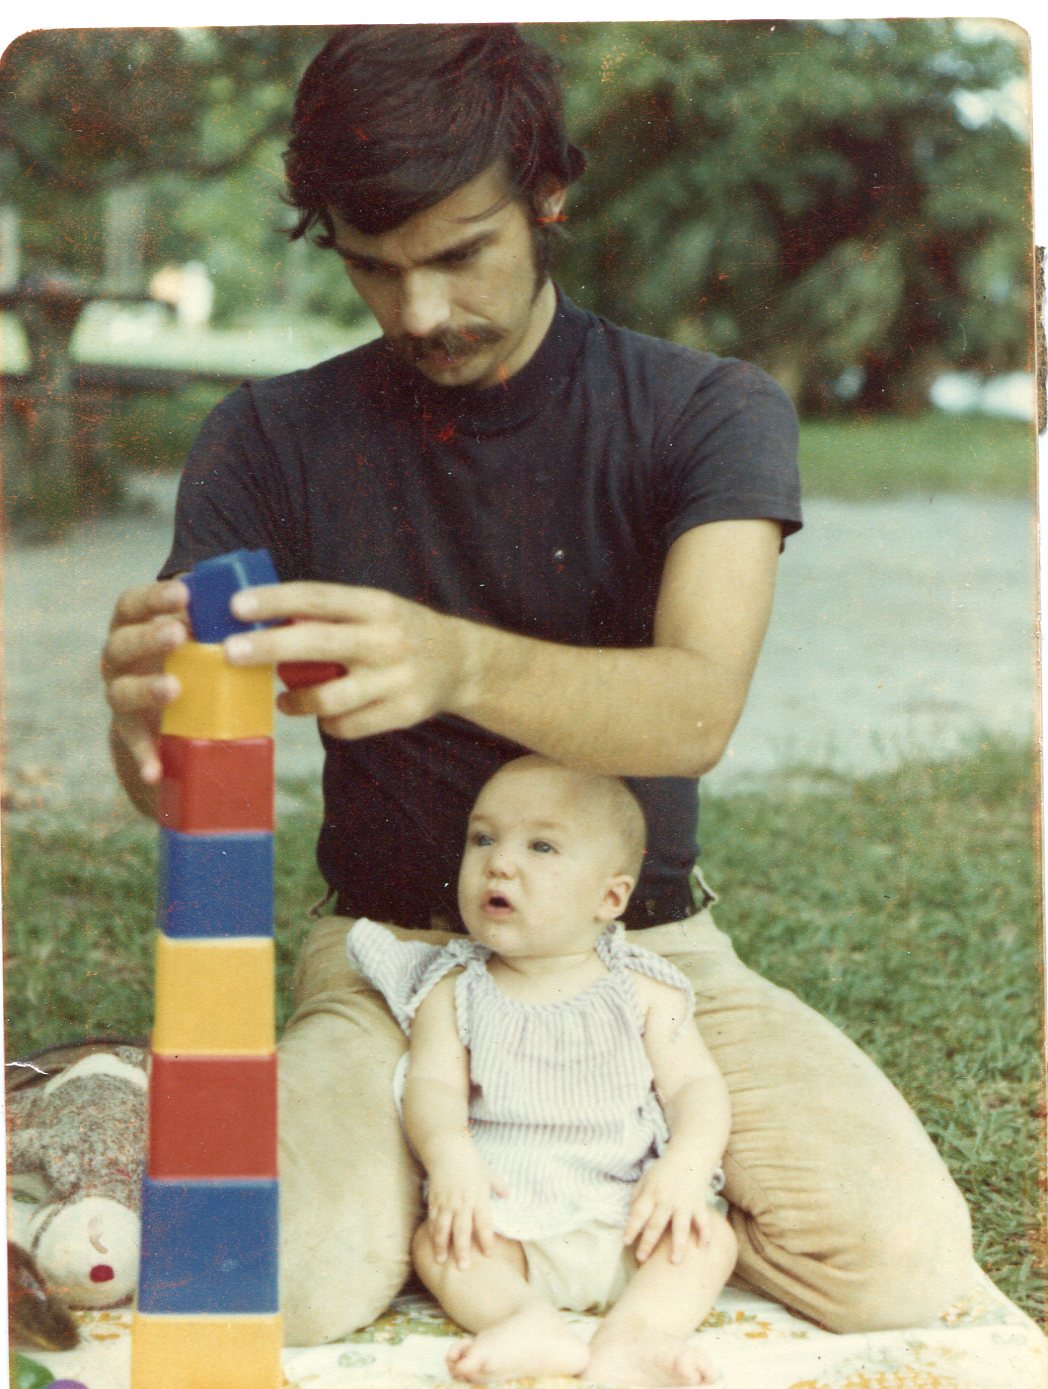 Dad circa 1974